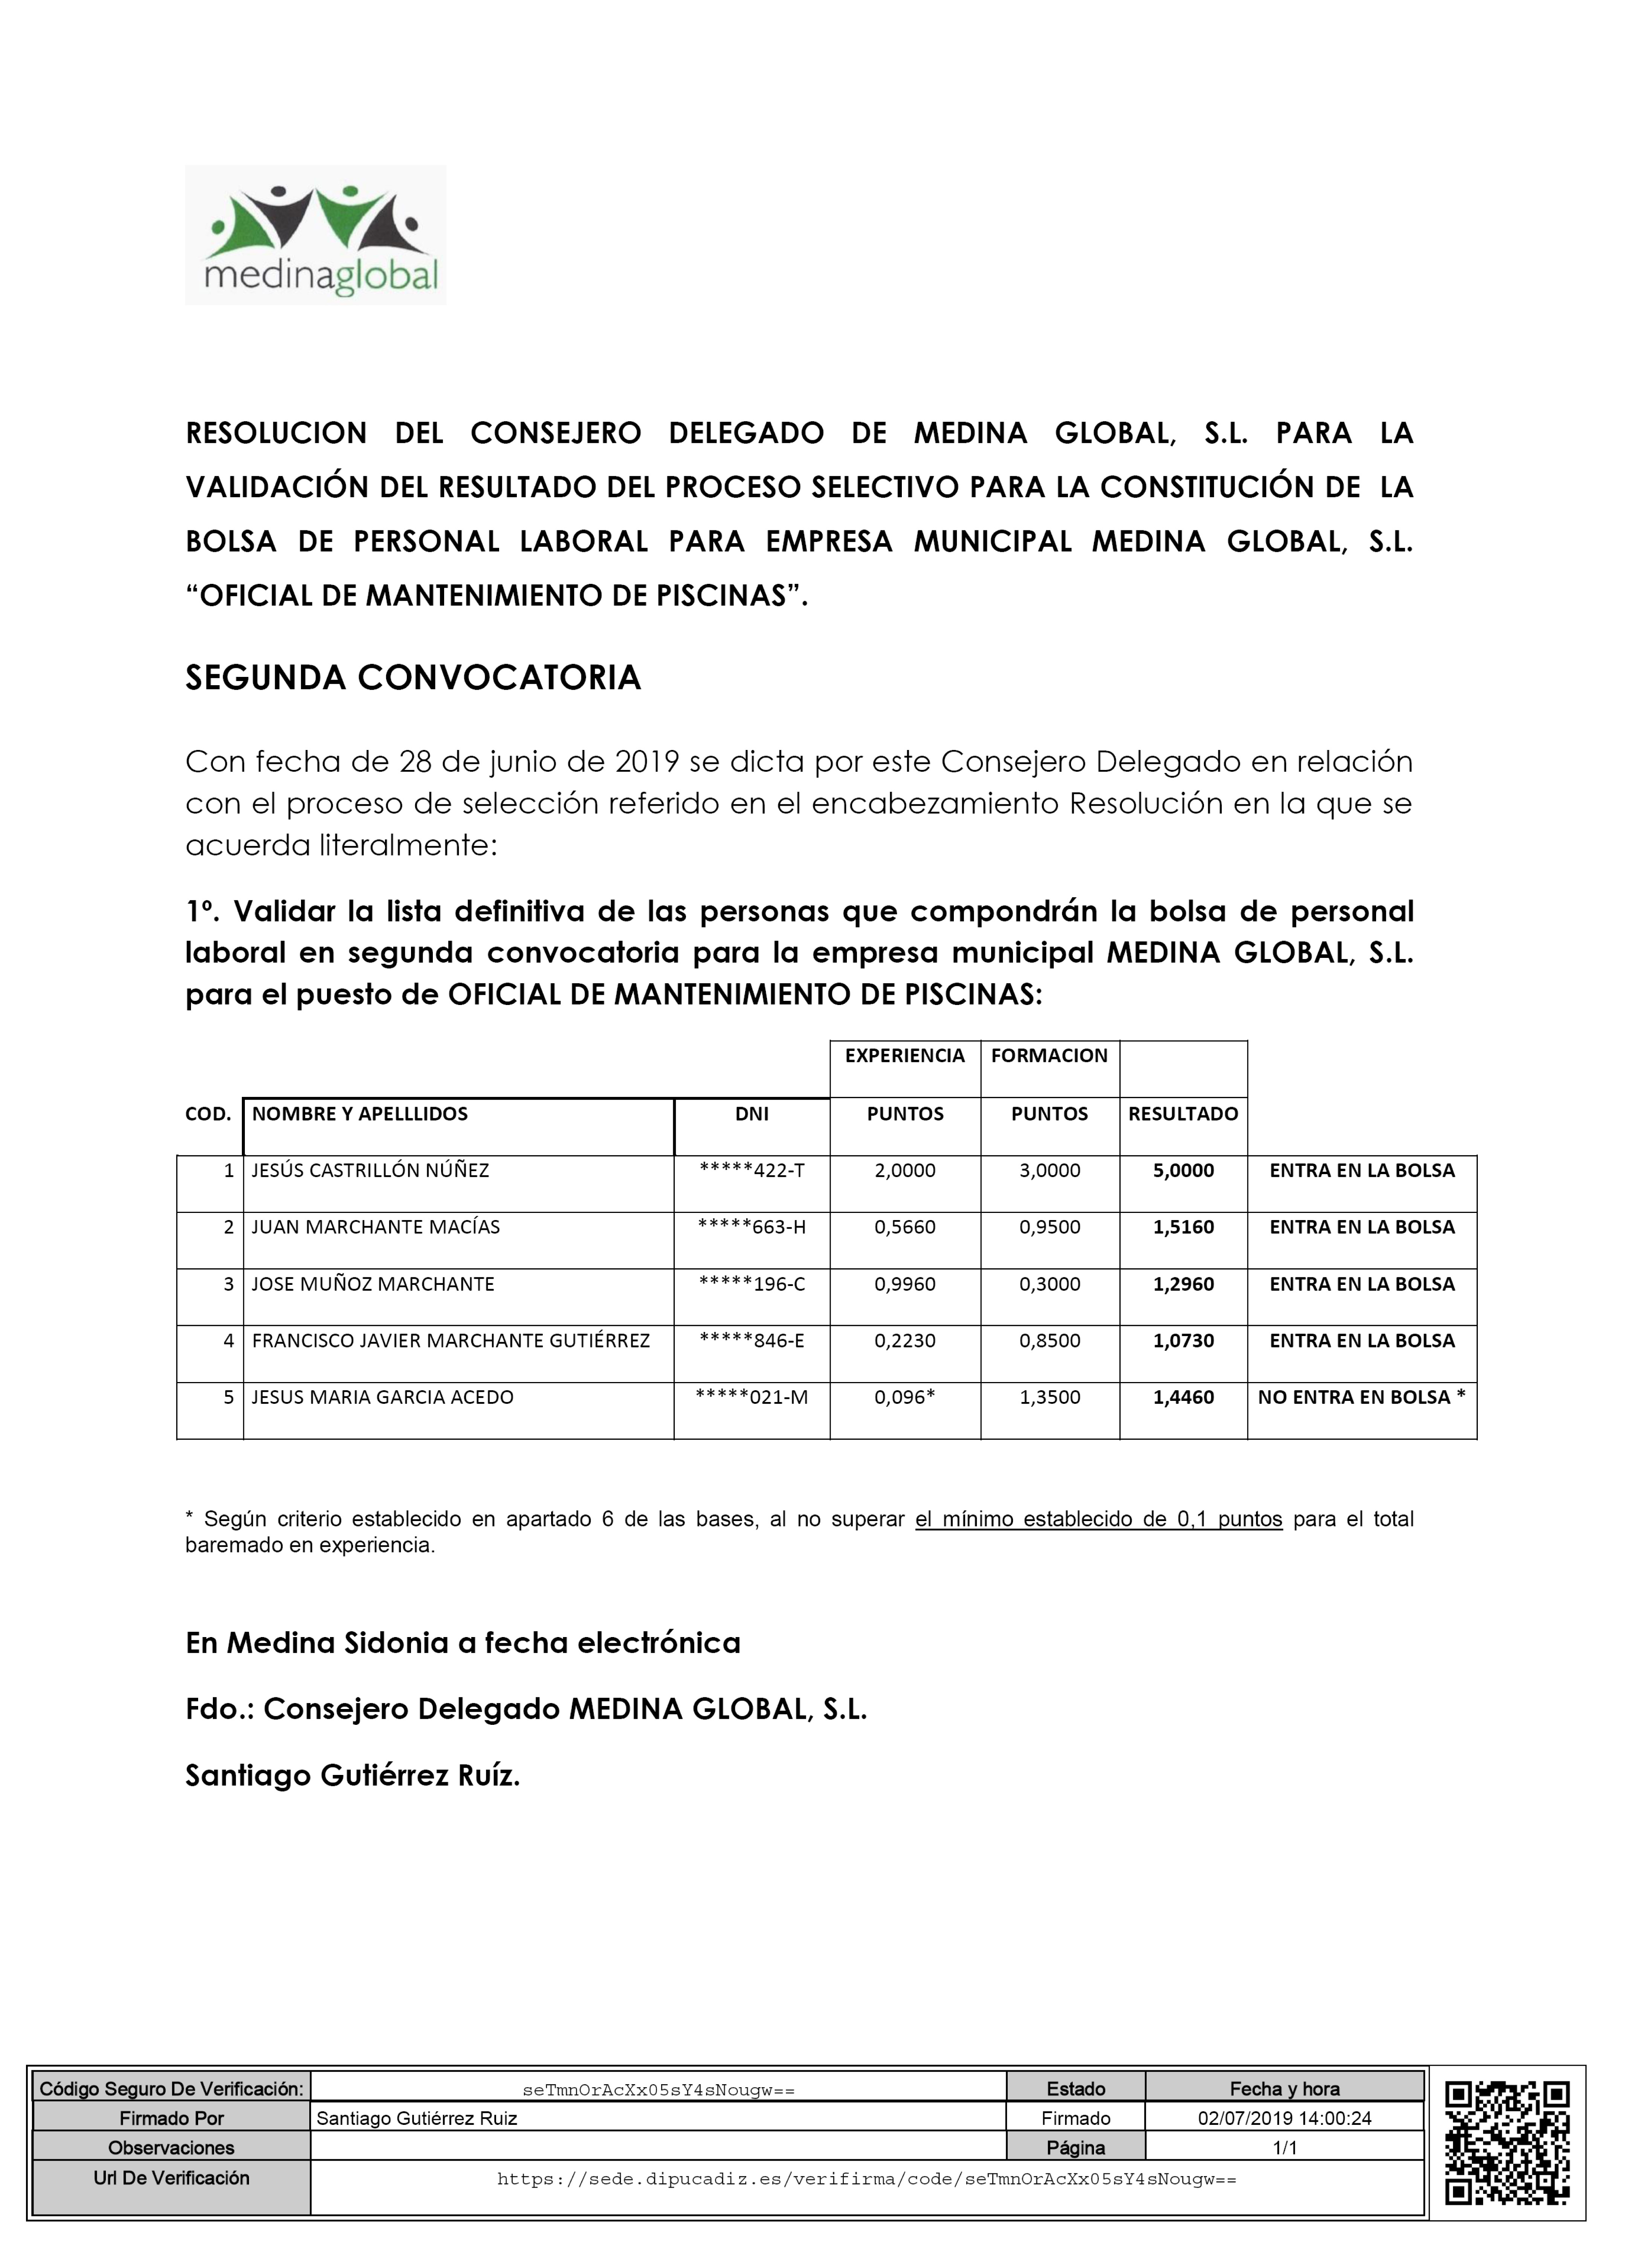 LISTA DEFINITIVA DE LA 2ª CONVOCATORIA DEL PROCESO DE SELECCIÓN DE OFICIAL MANTENEDOR DE PISCINA